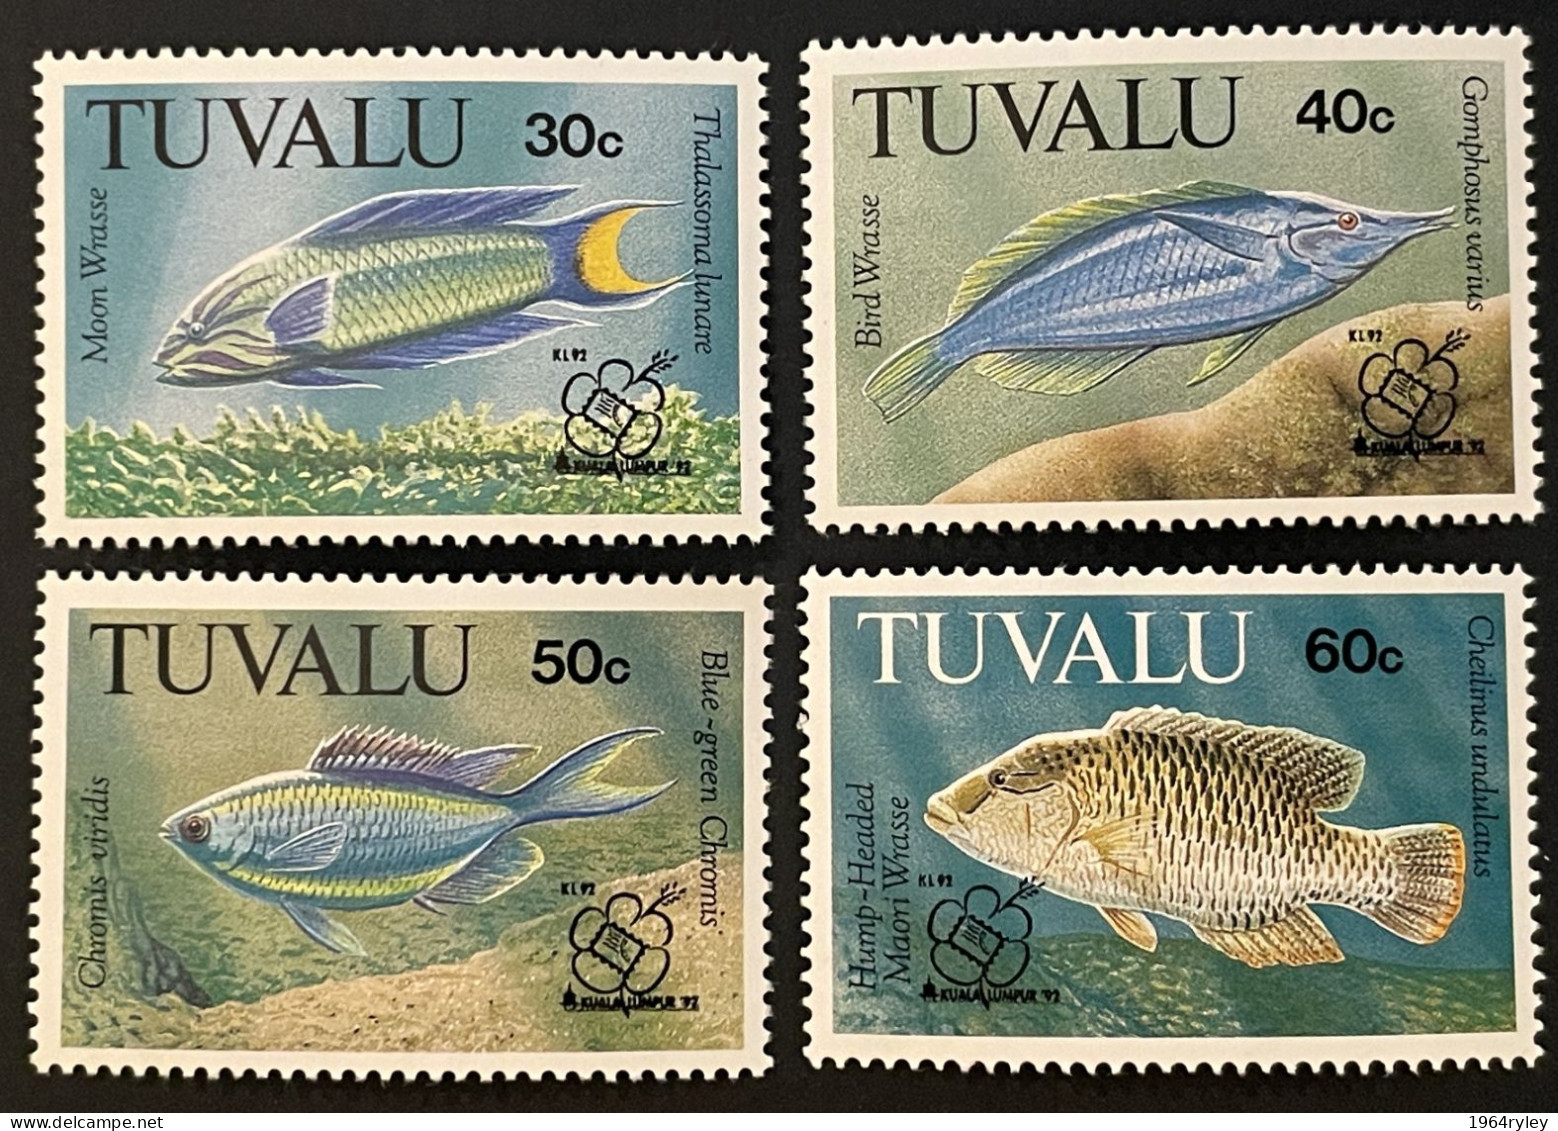 TUVALU - MNH** - 1992 - # 642/645 - Tuvalu